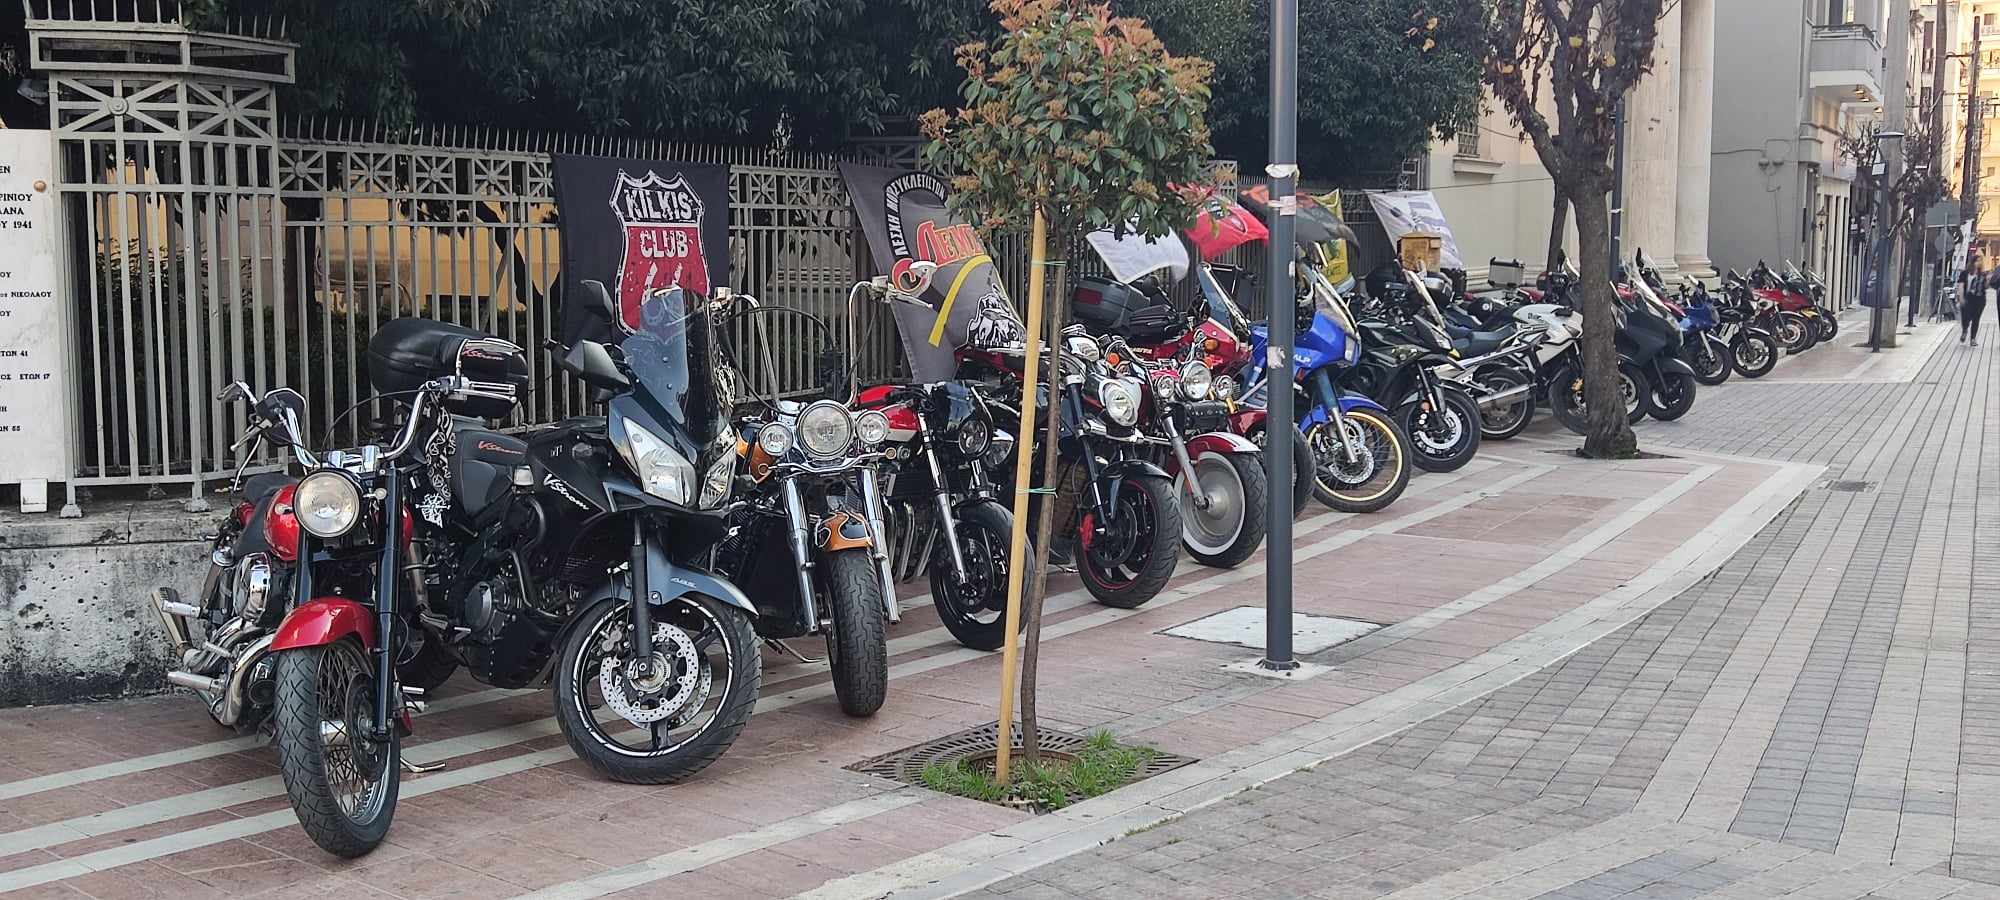 Αγρίνιο: Μοτοσικλετιστές από όλη την Ελλάδα για το πρώτο συνέδριο της Ομοσπονδίας τους (εικόνες)